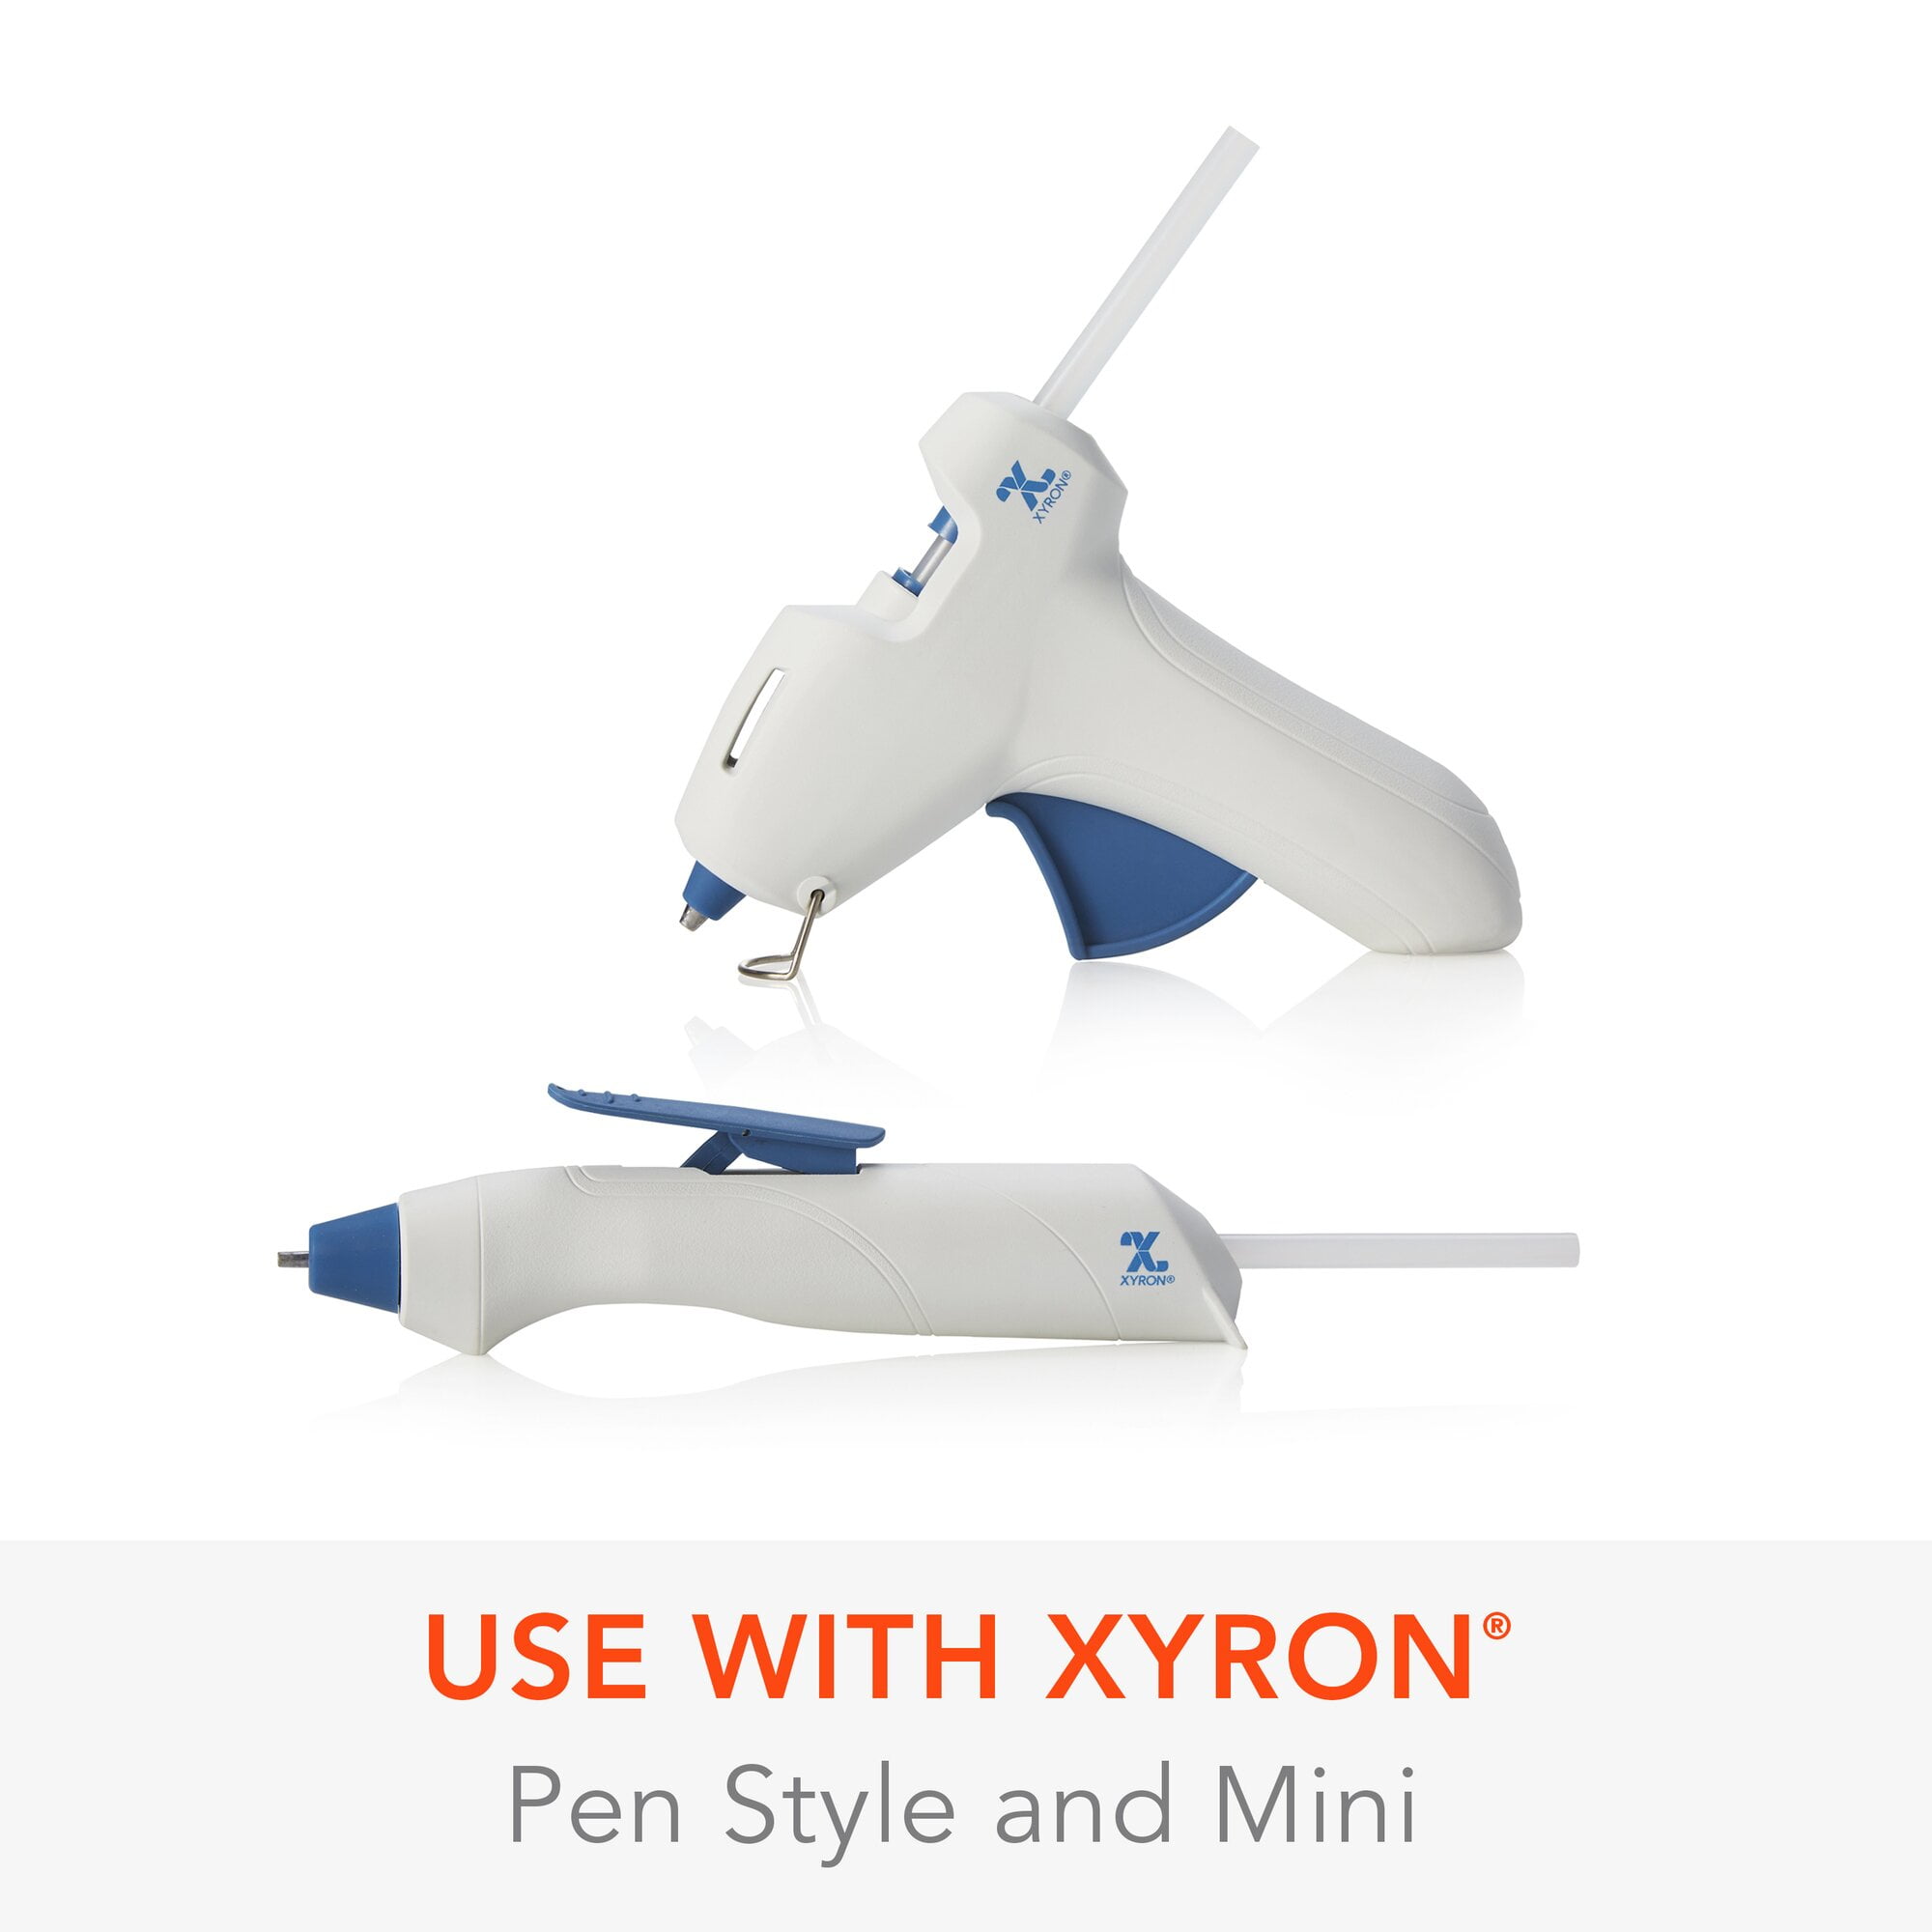 Xyron Mini Multi-Stick Glue Gun, Hot Glue Guns